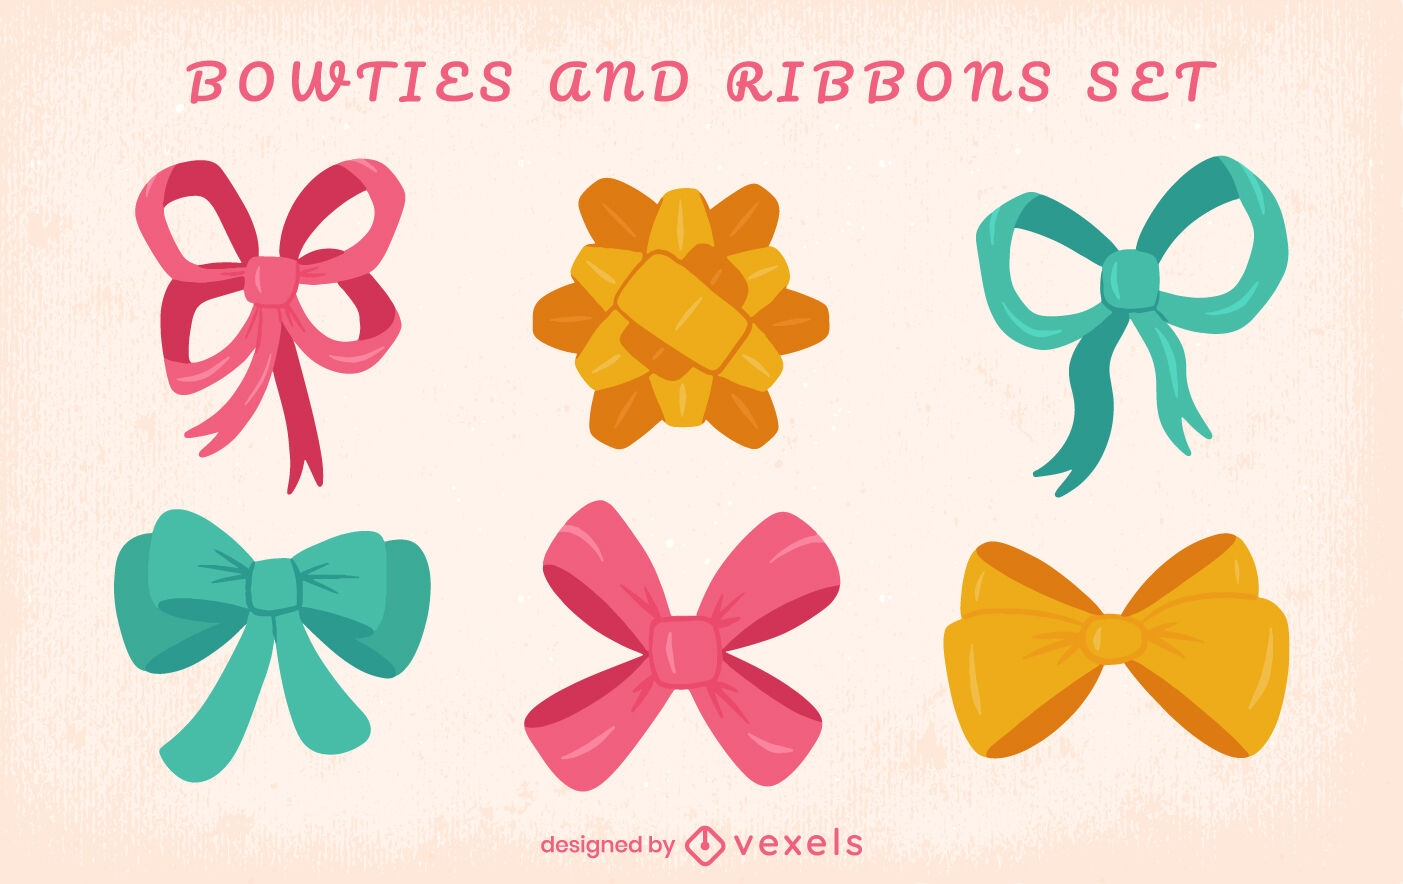 Bows and ribbons set design